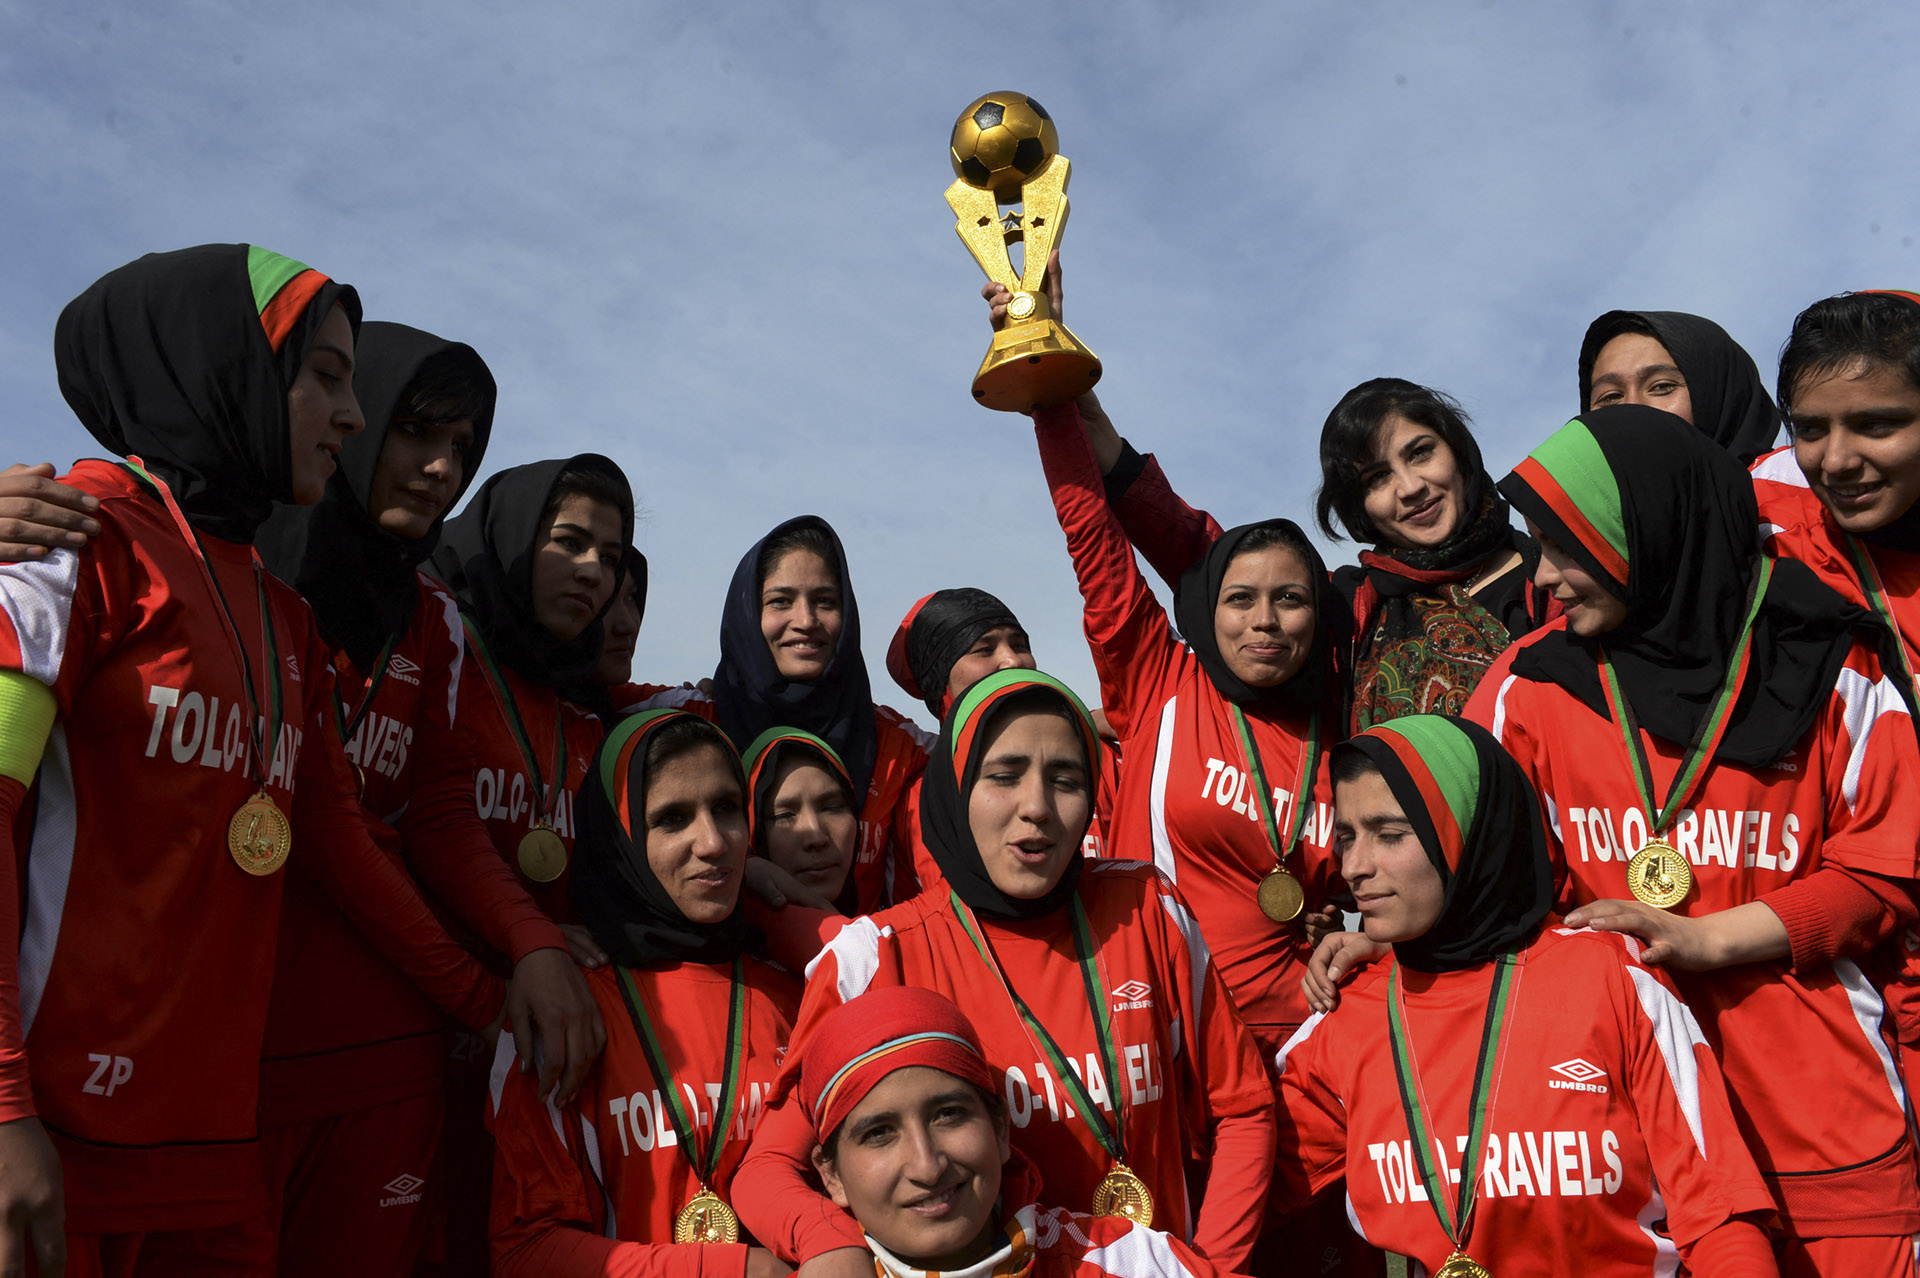 Elmenekültek a női futballisták Afganisztánból